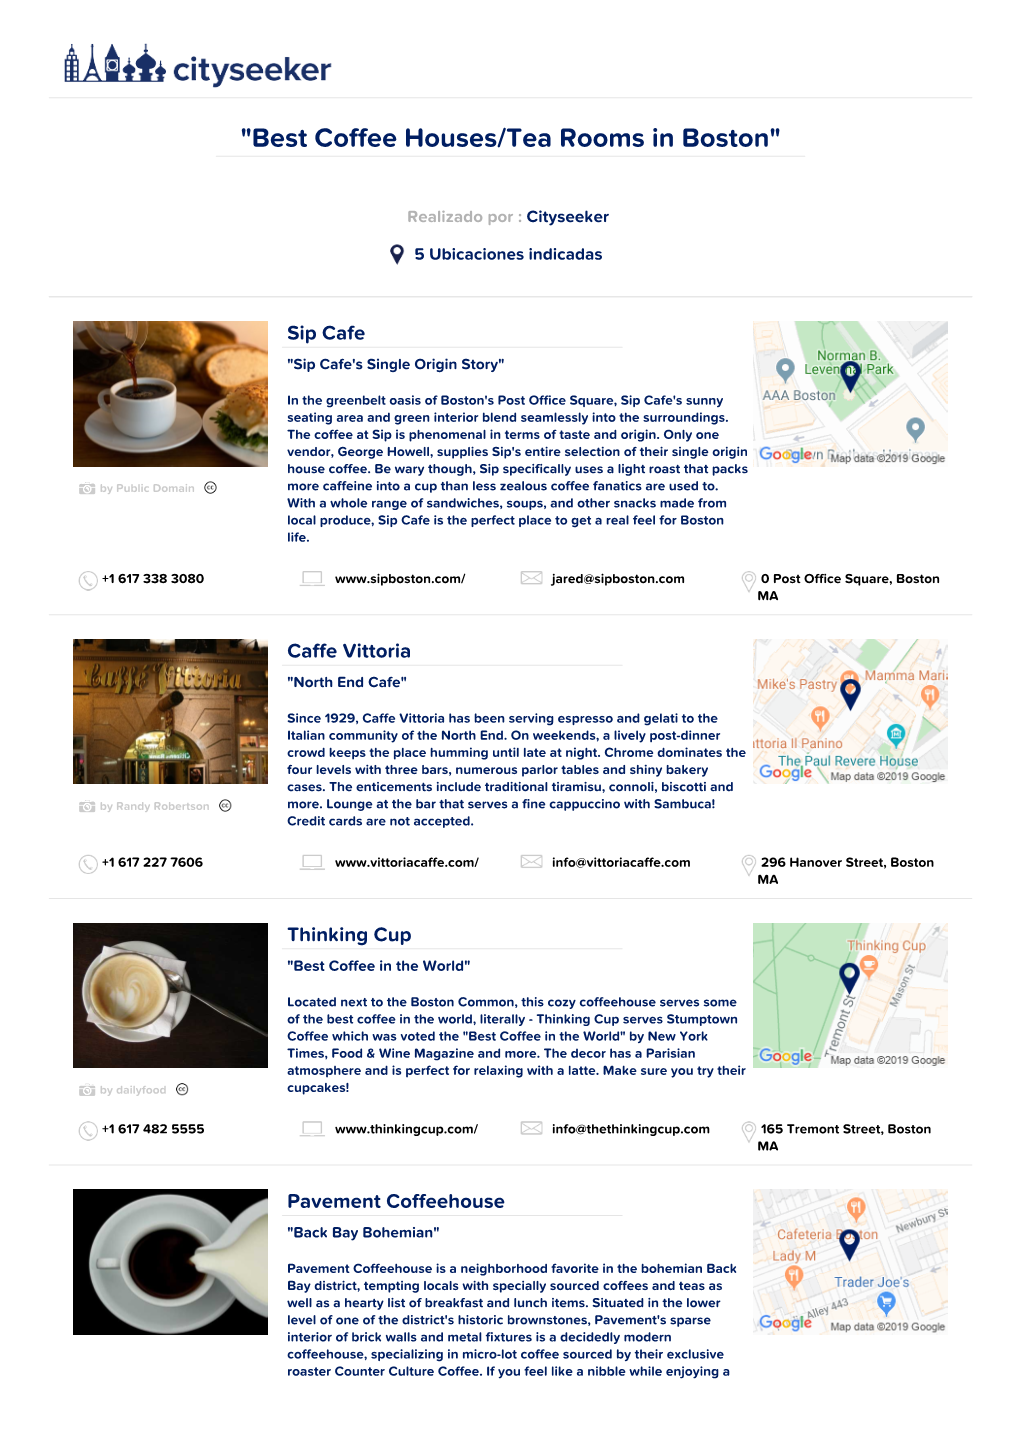 Best Coffee Houses/Tea Rooms in Boston"